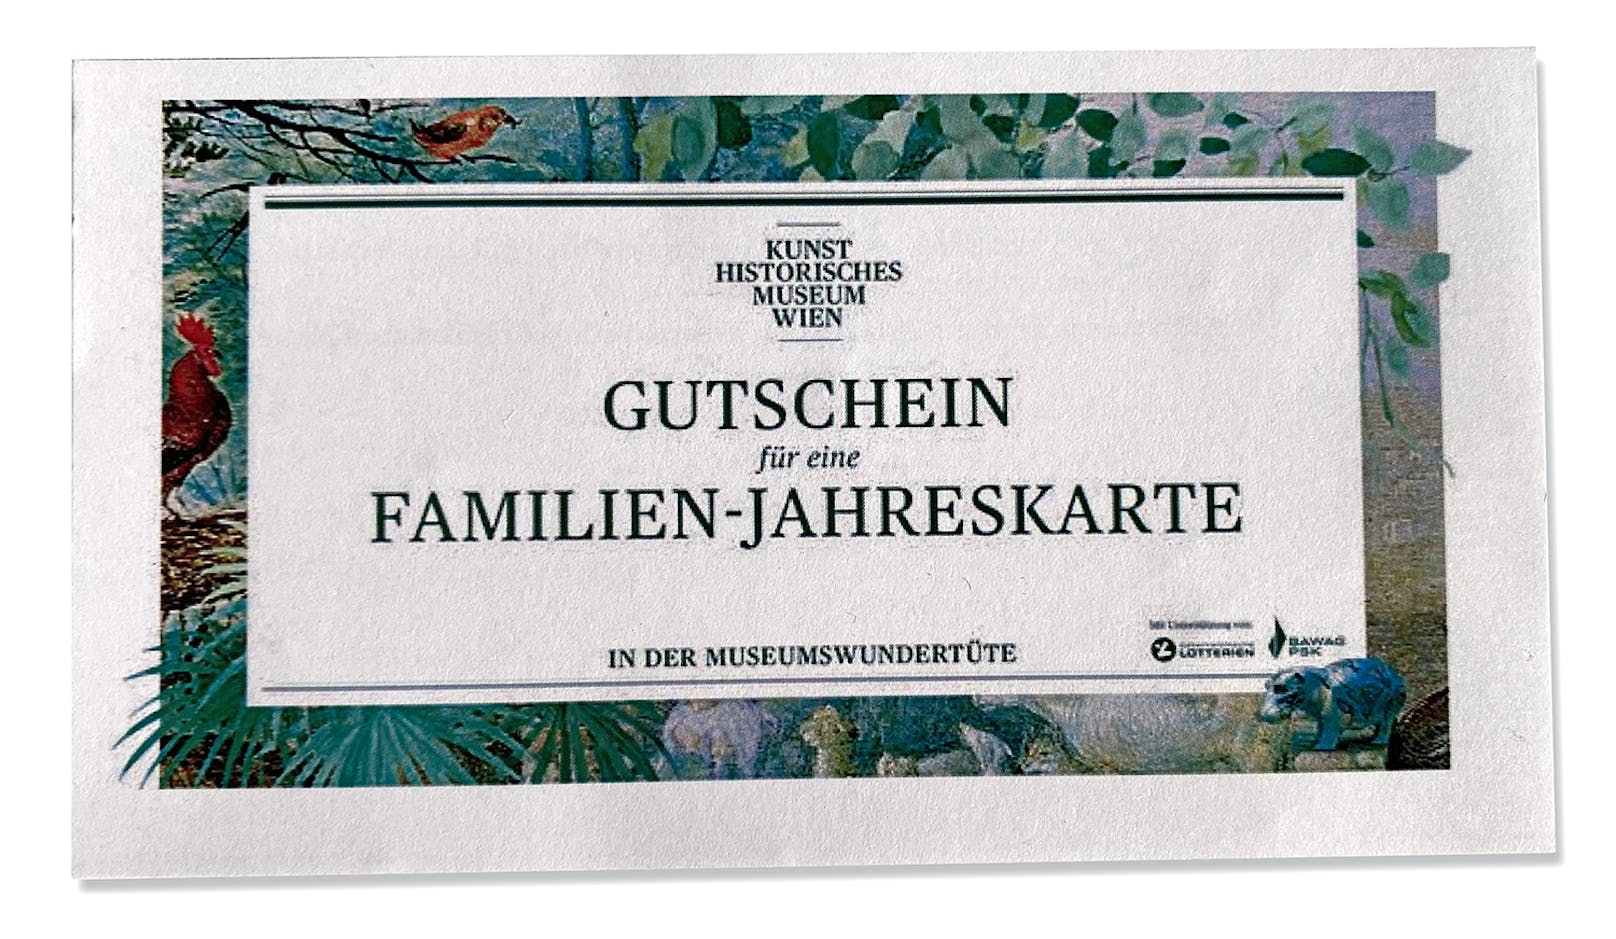 Der Gutschein für eine Familien-Jahreskarte ermöglicht unbeschränkten Zutritt zu allen Museen und Standorten des KHM-Museumsverbands.